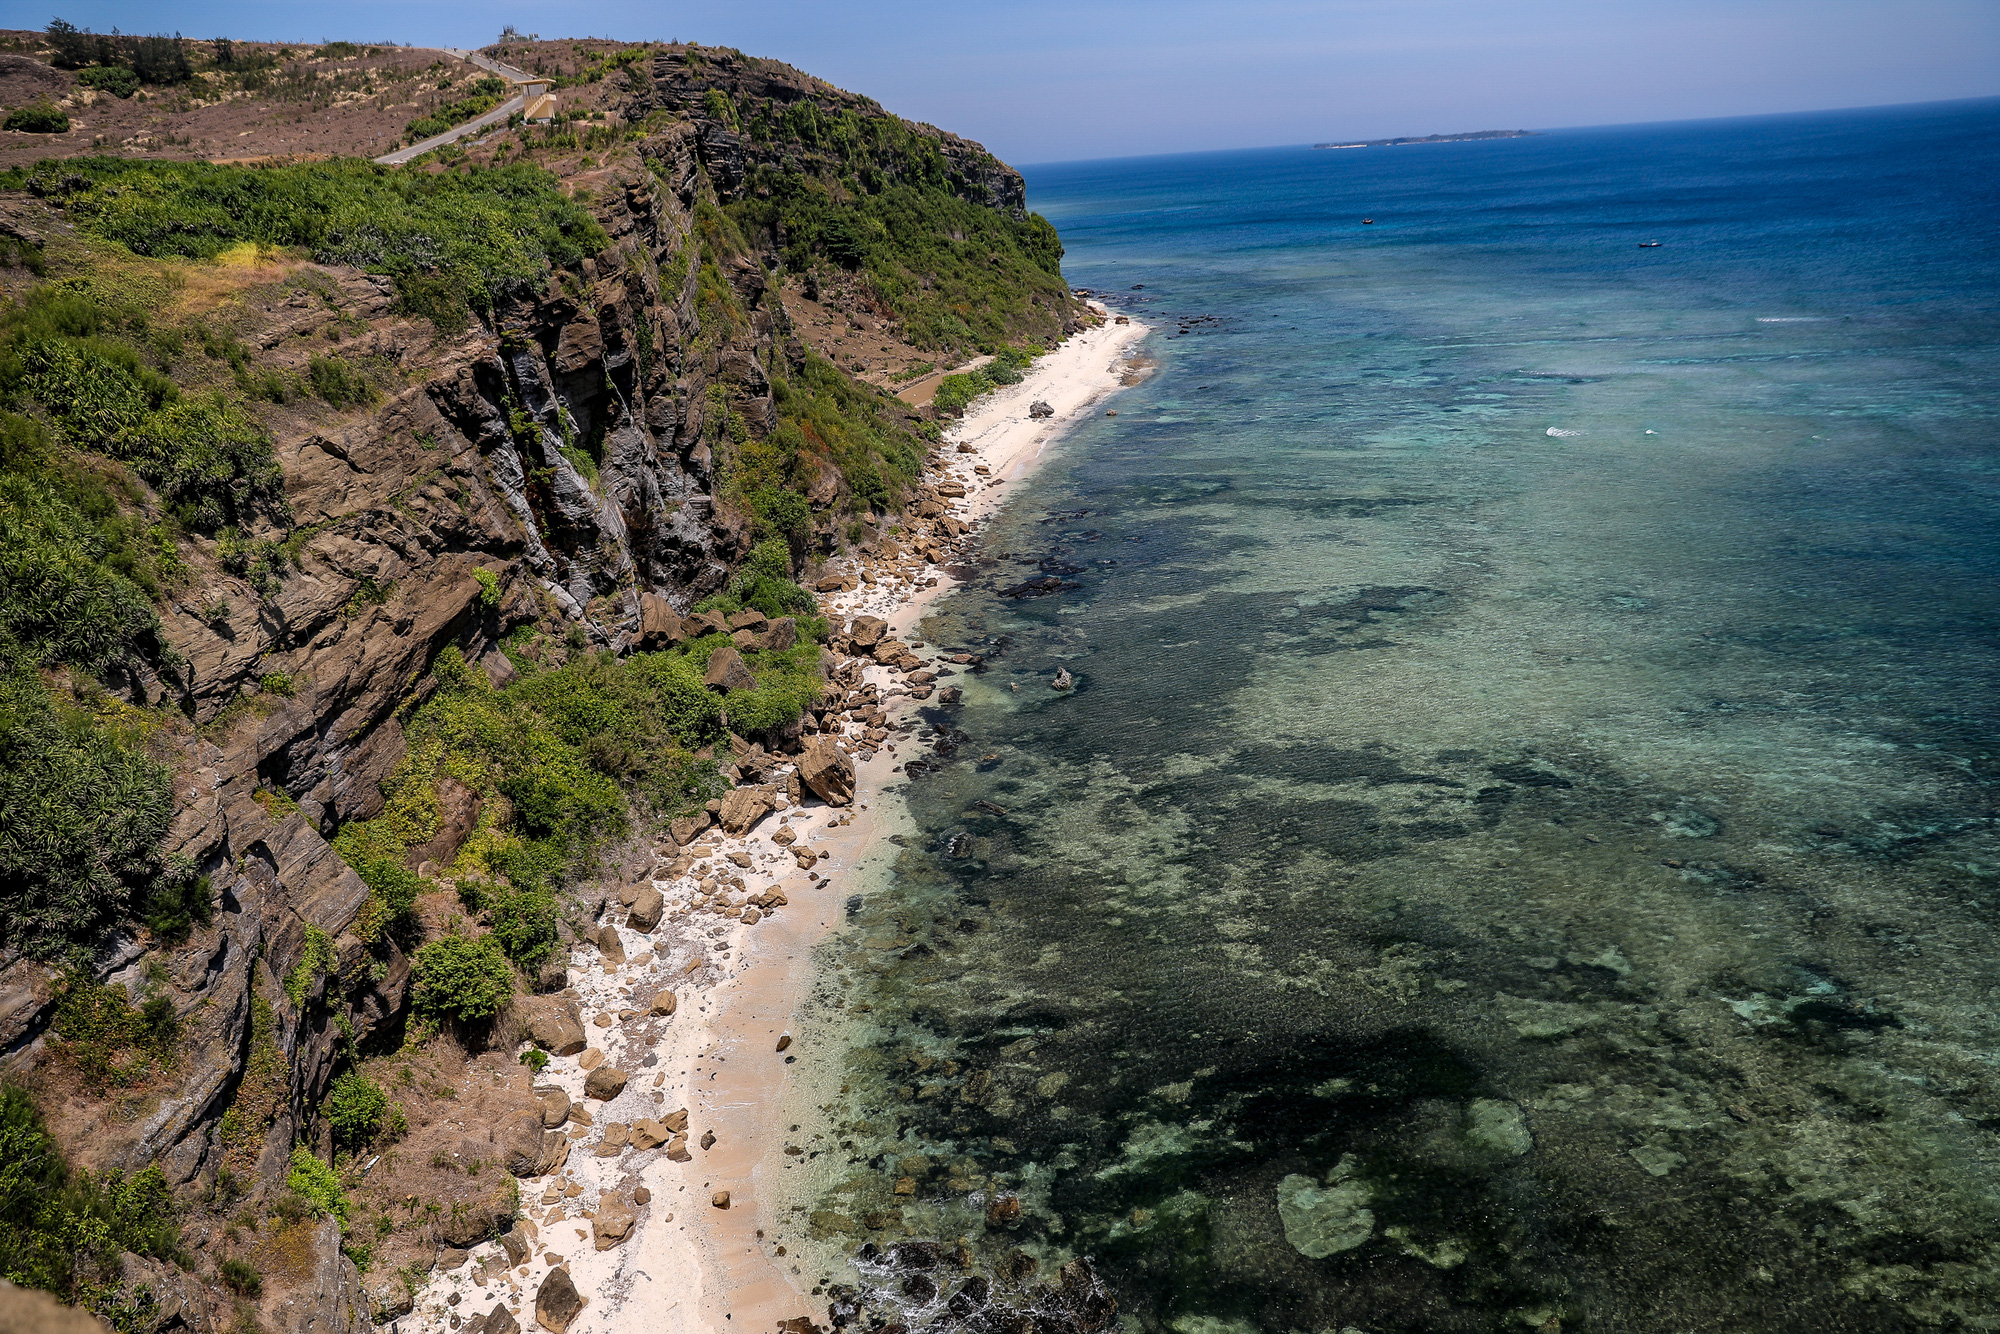 Tổng hợp những hình ảnh đẹp về đảo Lý Sơn - Điểm du lịch không thể bỏ qua trong năm 2020 - Ảnh 6.